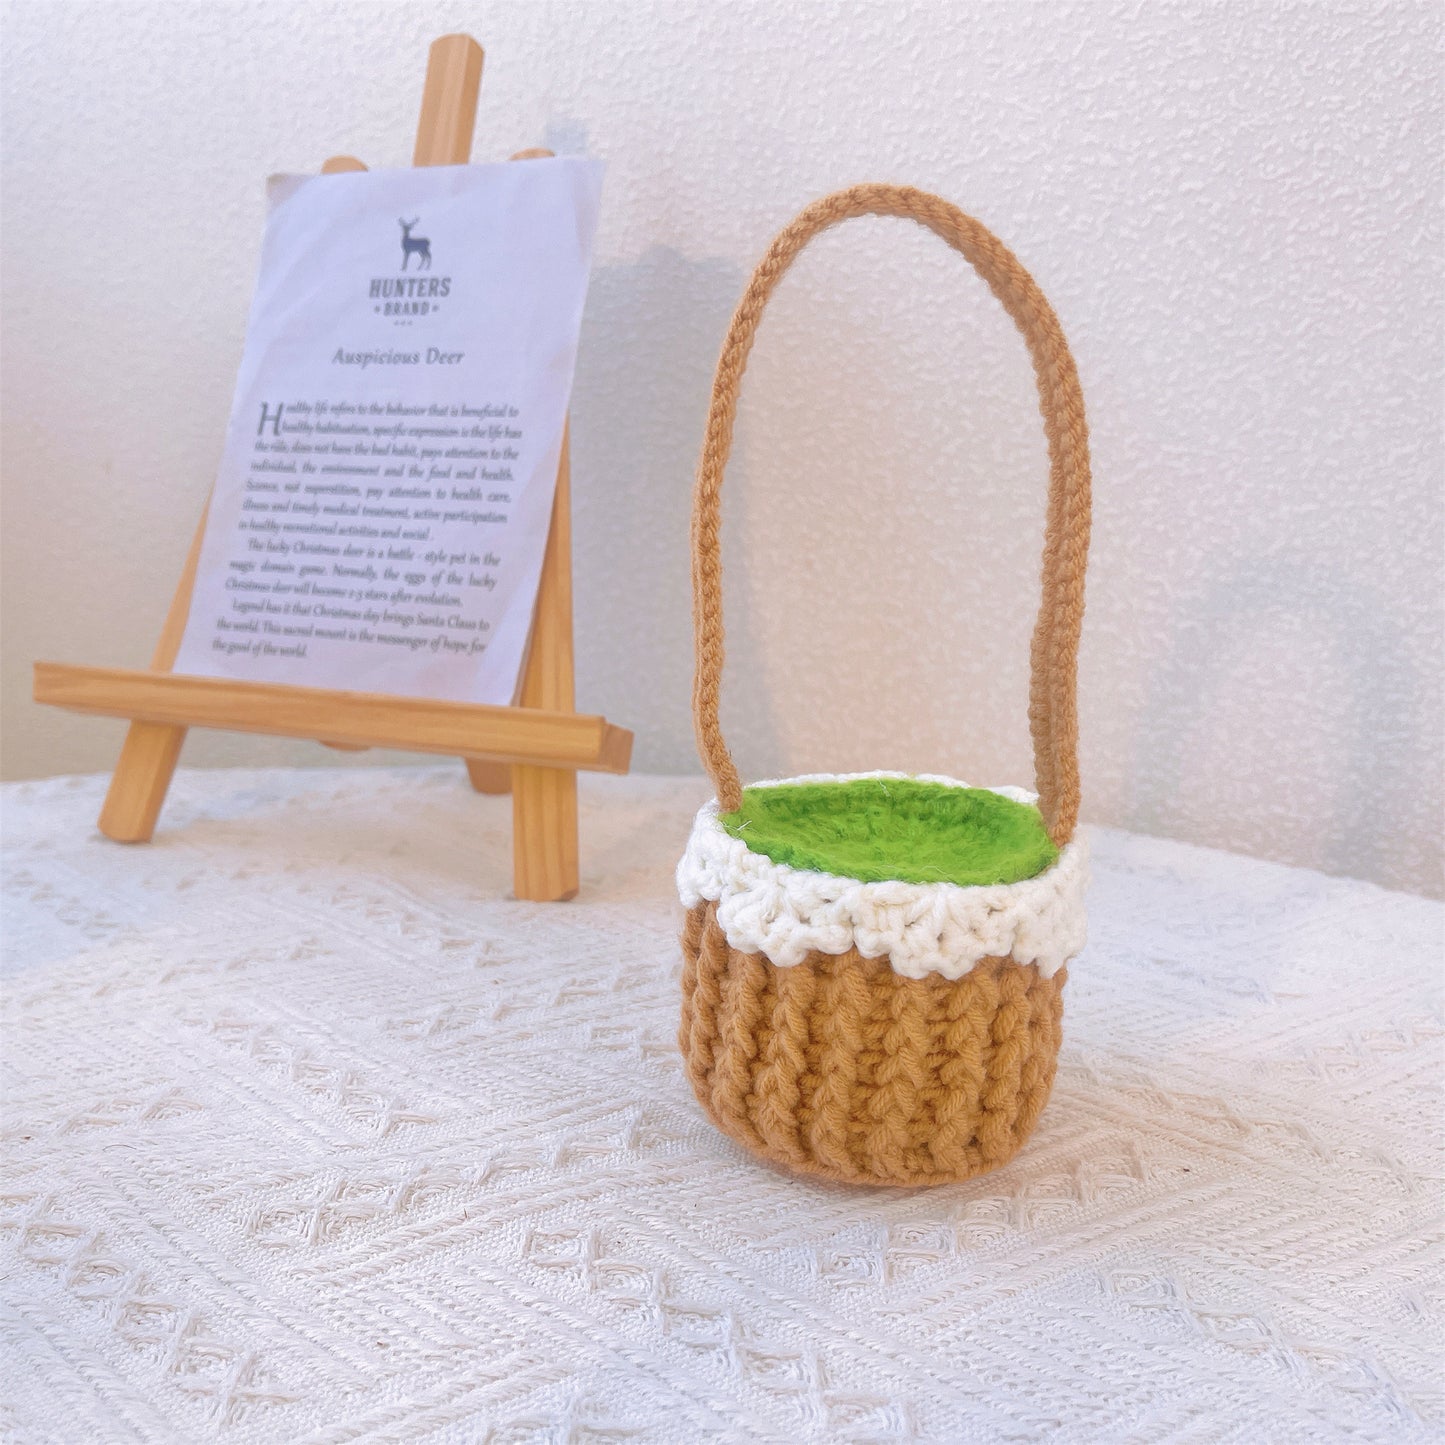 Panier de tournesol au crochet Boho - Décoration de la maison fabriquée à la main